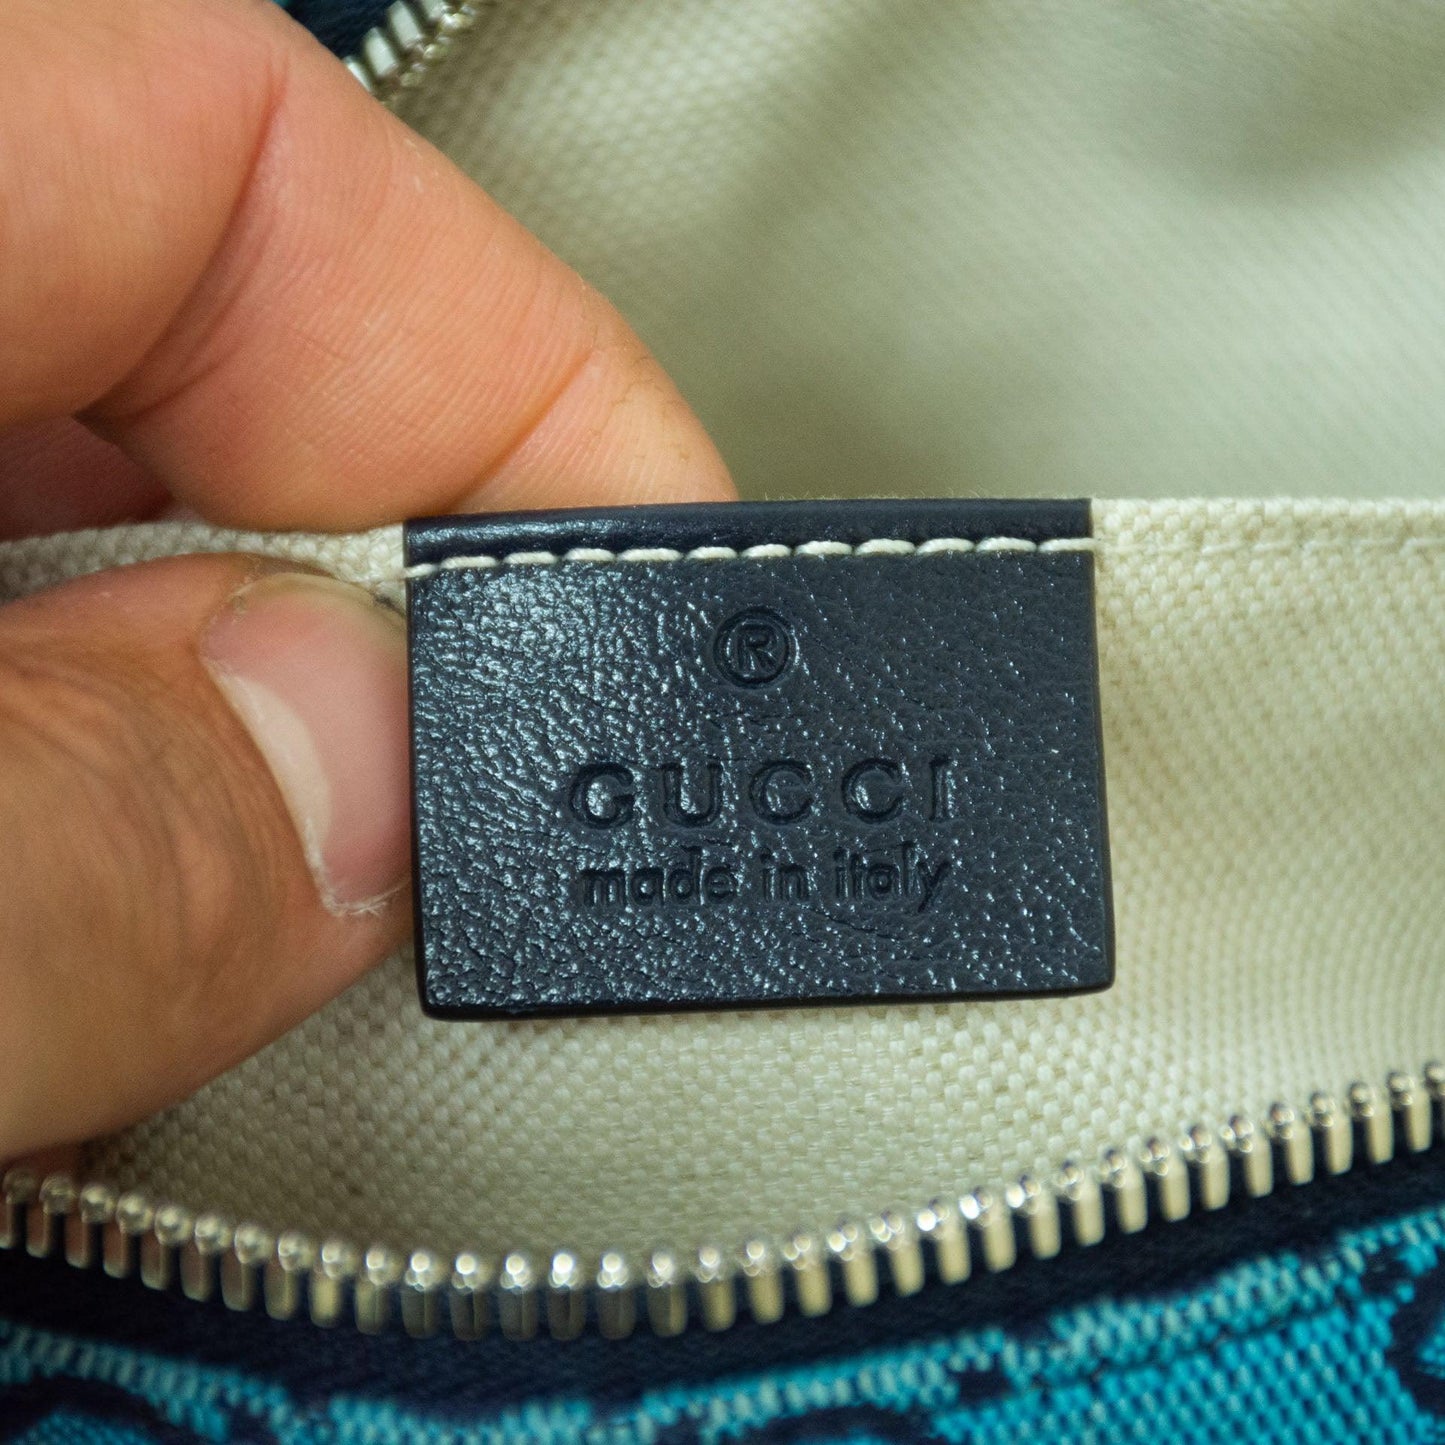 Gucci GG Marmont Shoulder Bag - Blue - 447632 - ipawnishop.com